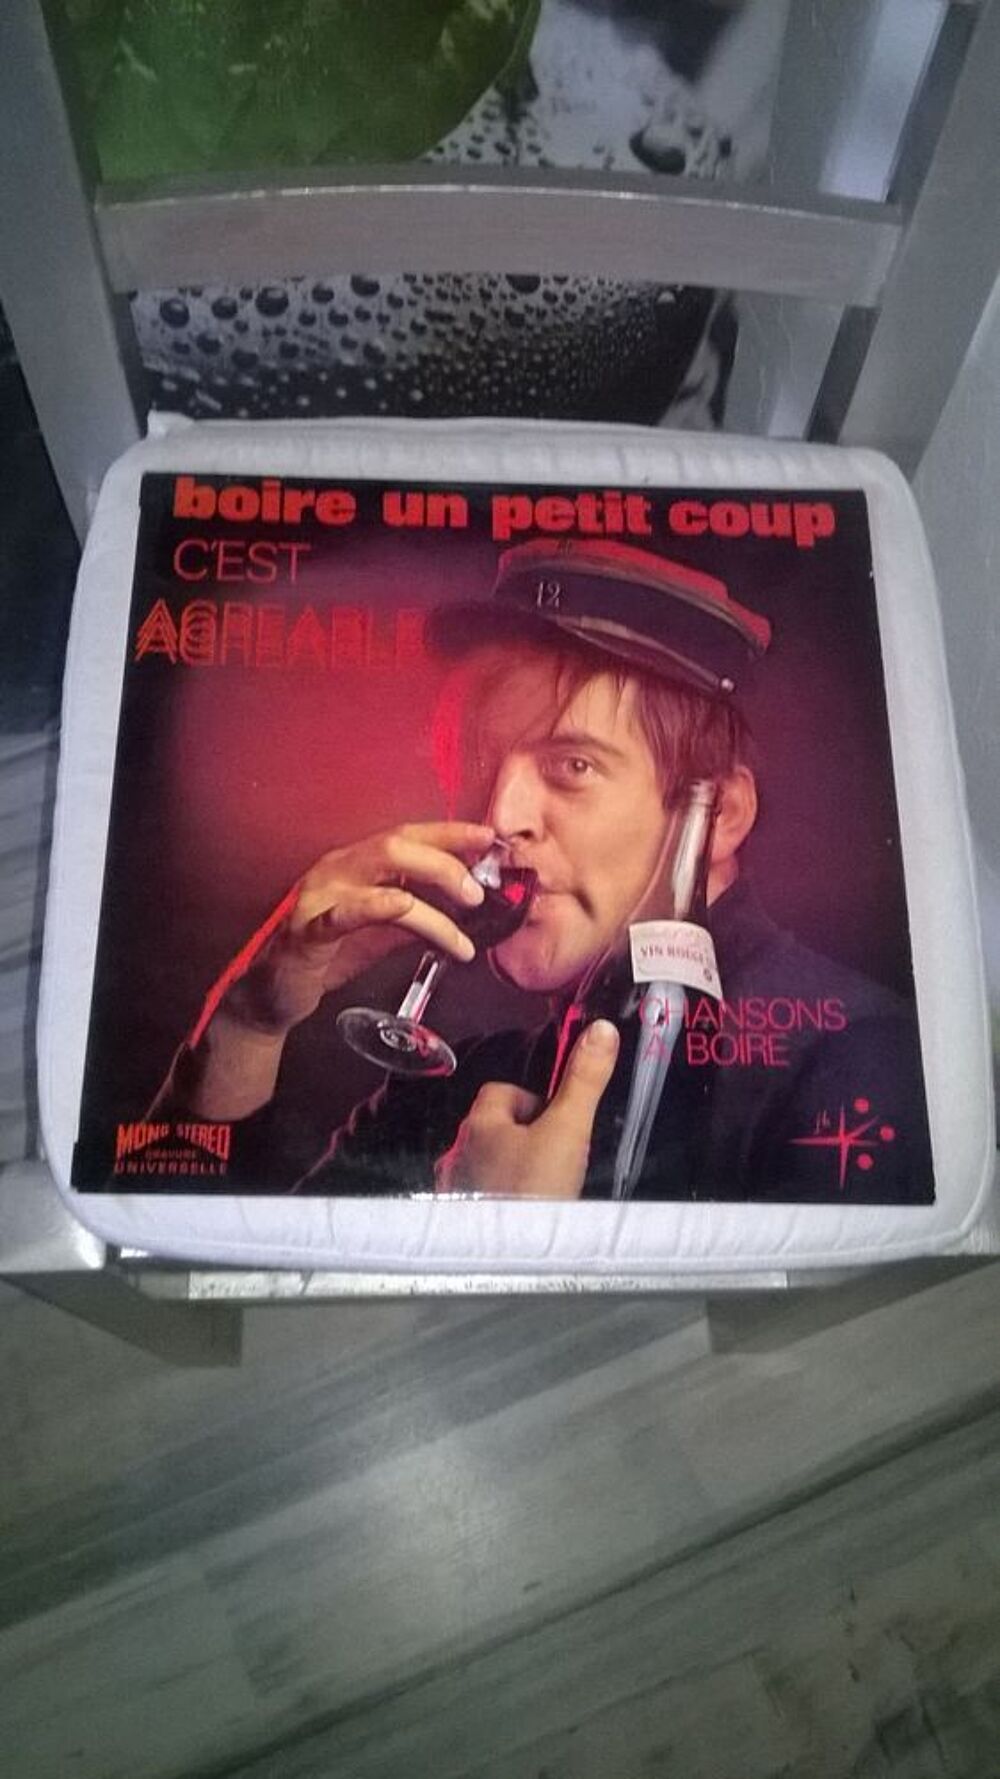 Vinyle Boire Un Petit Coup C'est Agr&eacute;able 
Orchestre Alain CD et vinyles